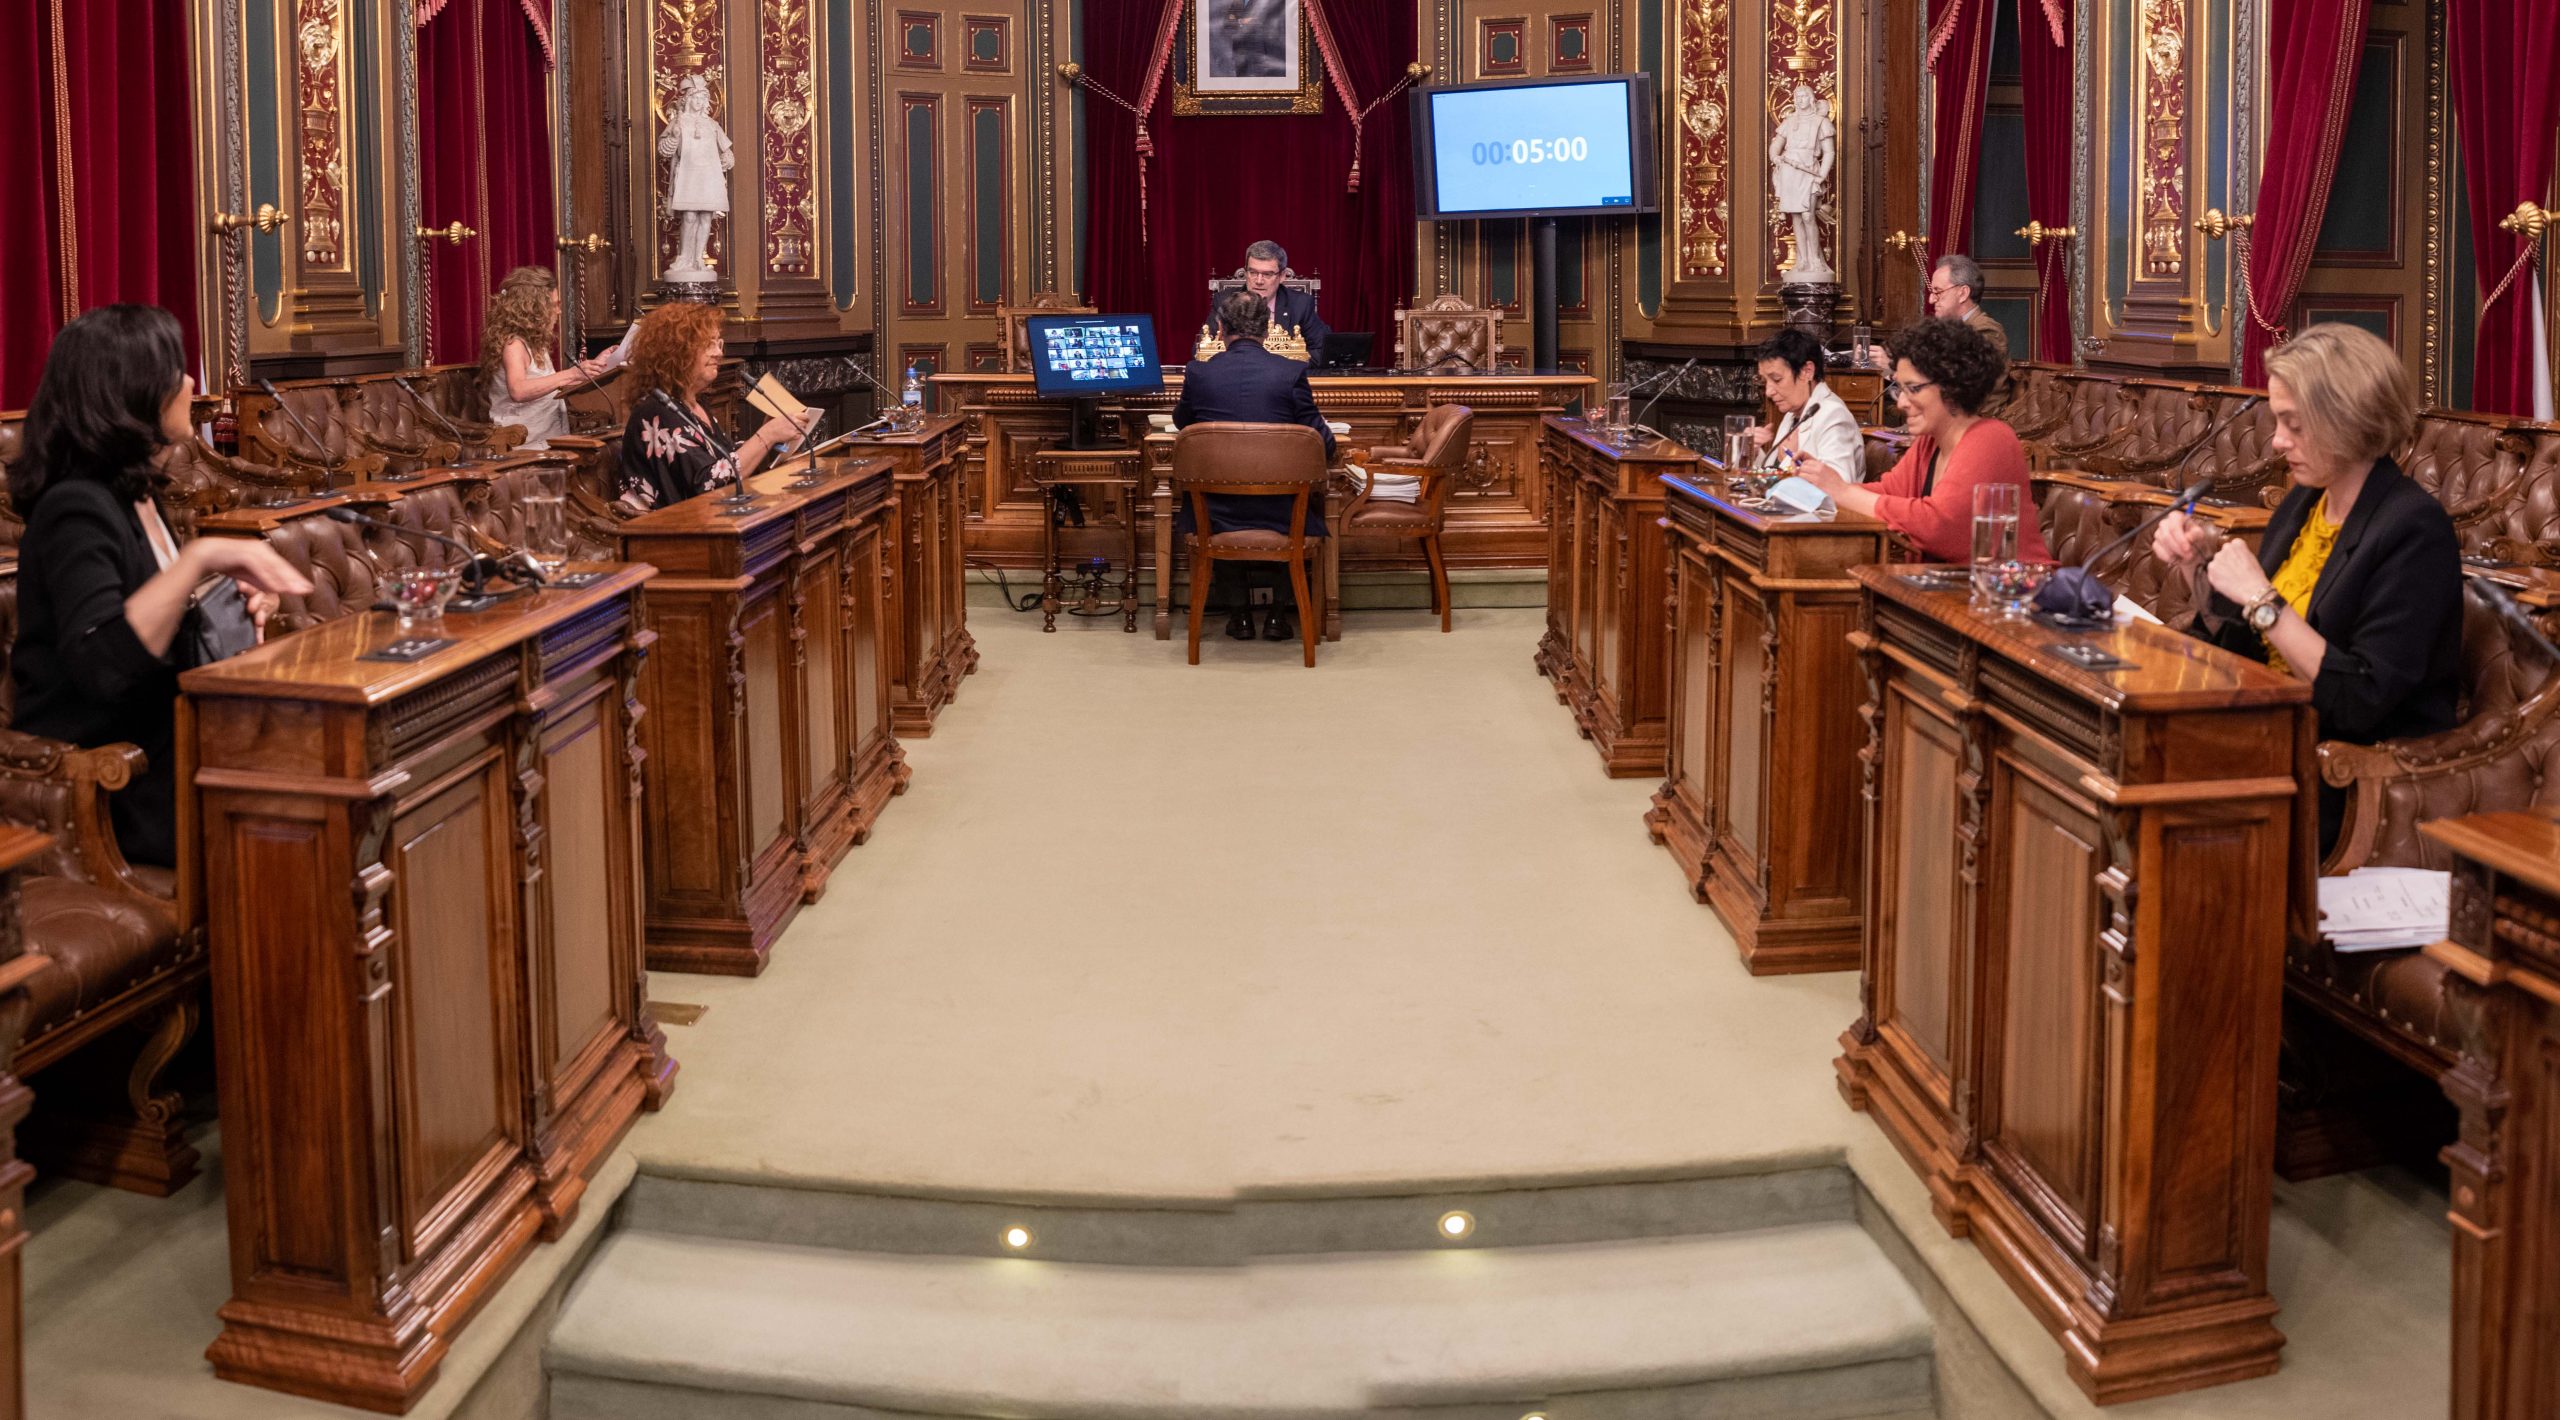 Reunión del ayuntamiento de Bilbao con el plan aurrera